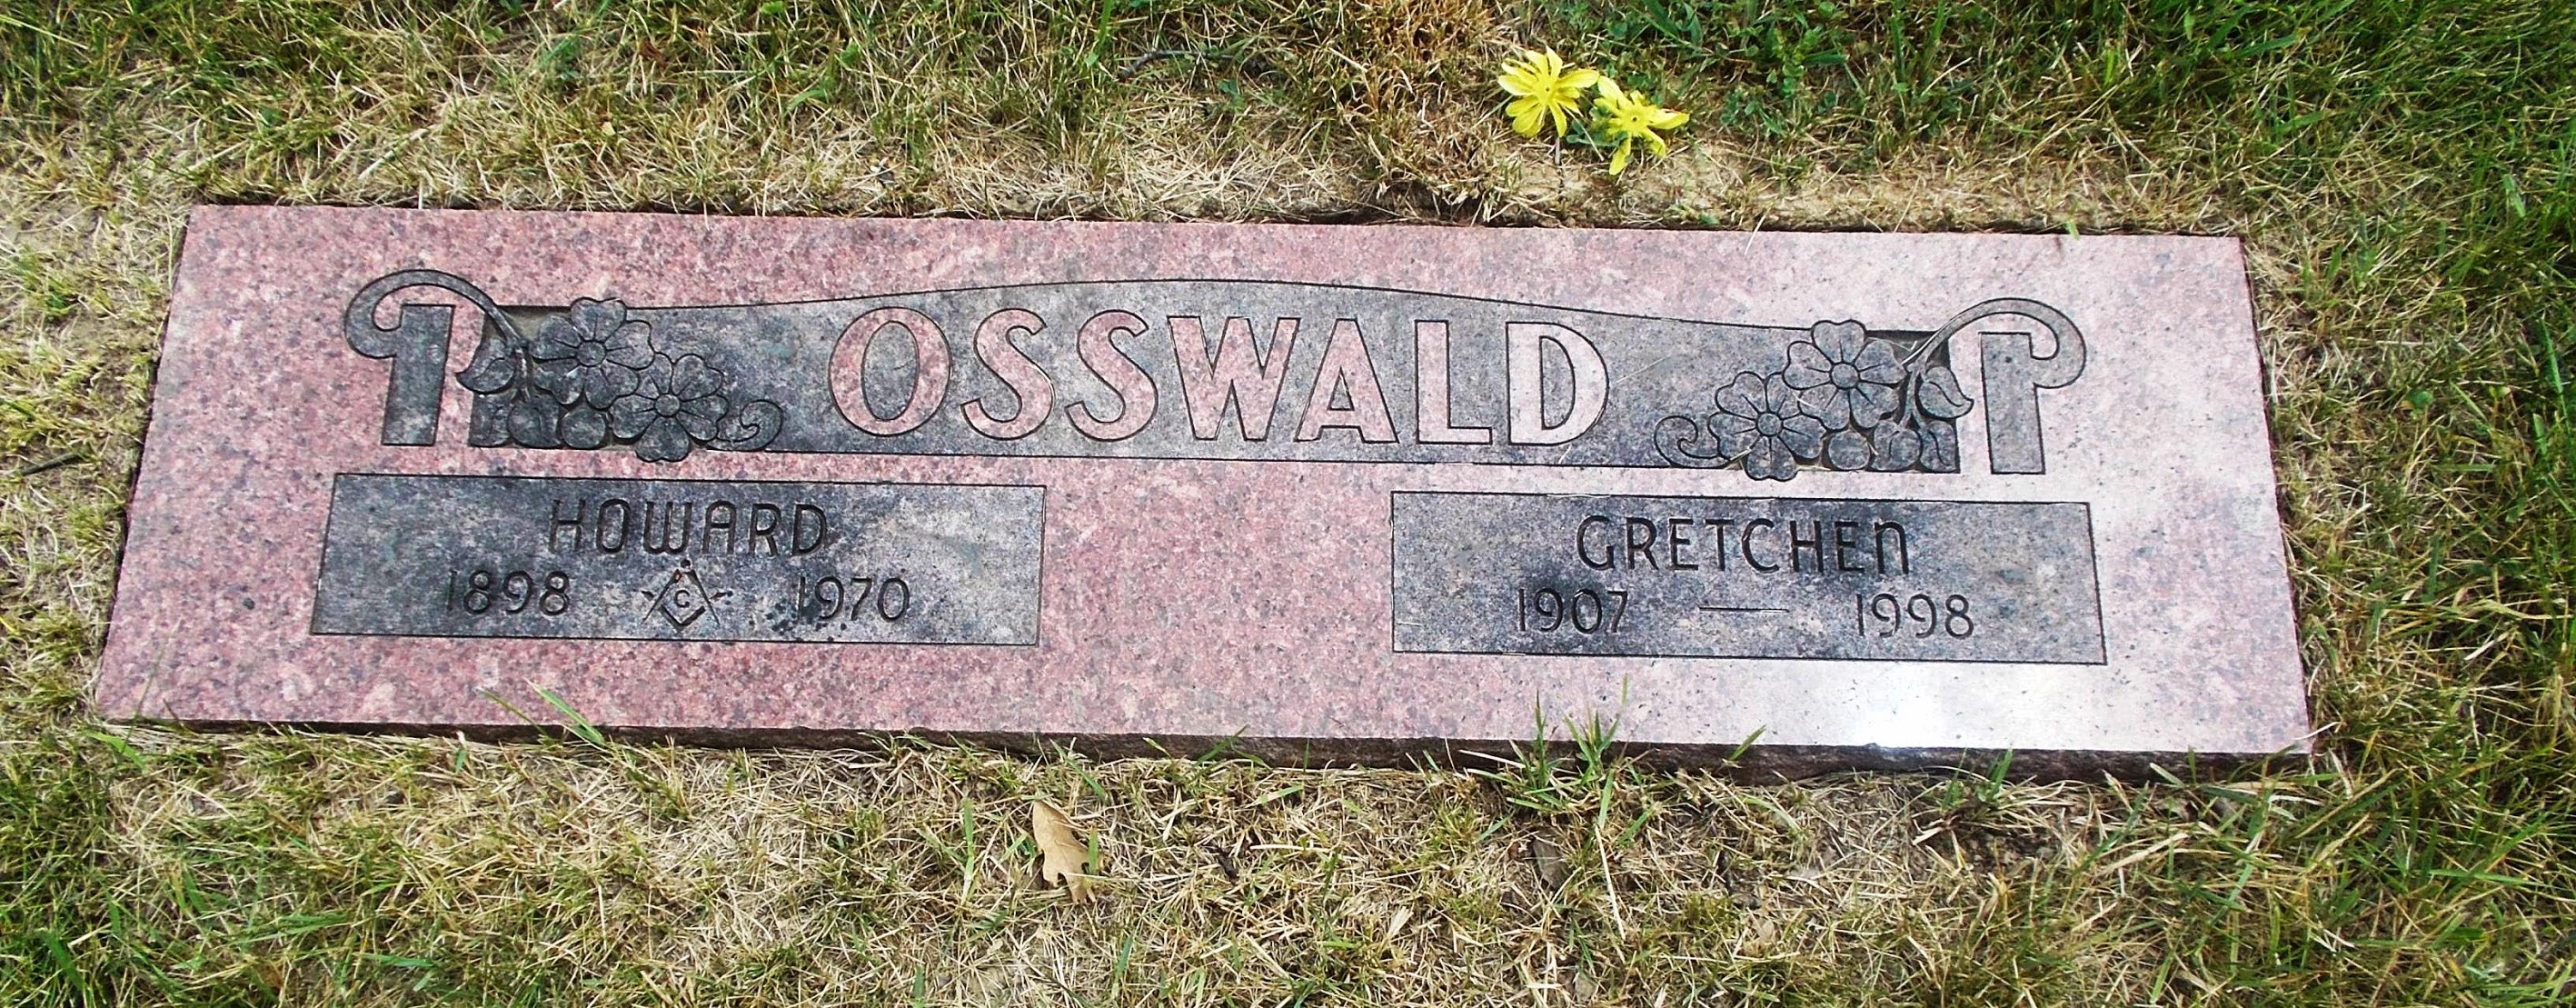 Howard Osswald